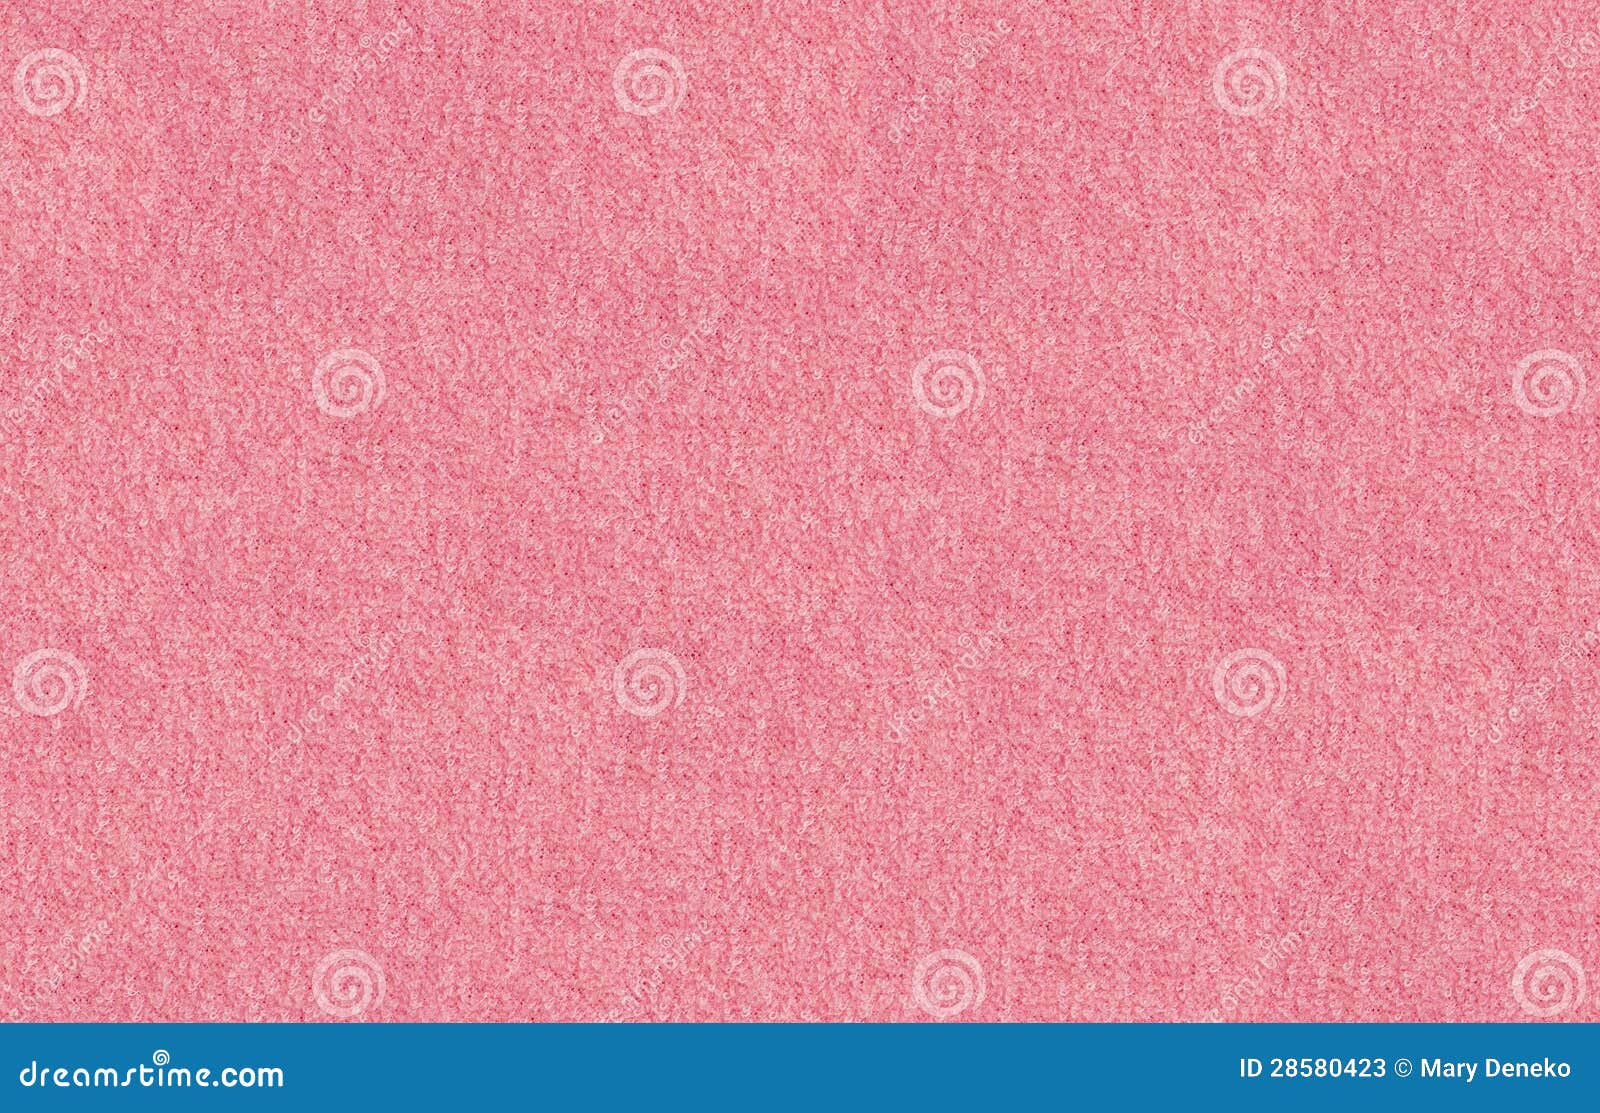 Seamless Texture Pink Terry Fabric Stock Photos - Image: 28580423